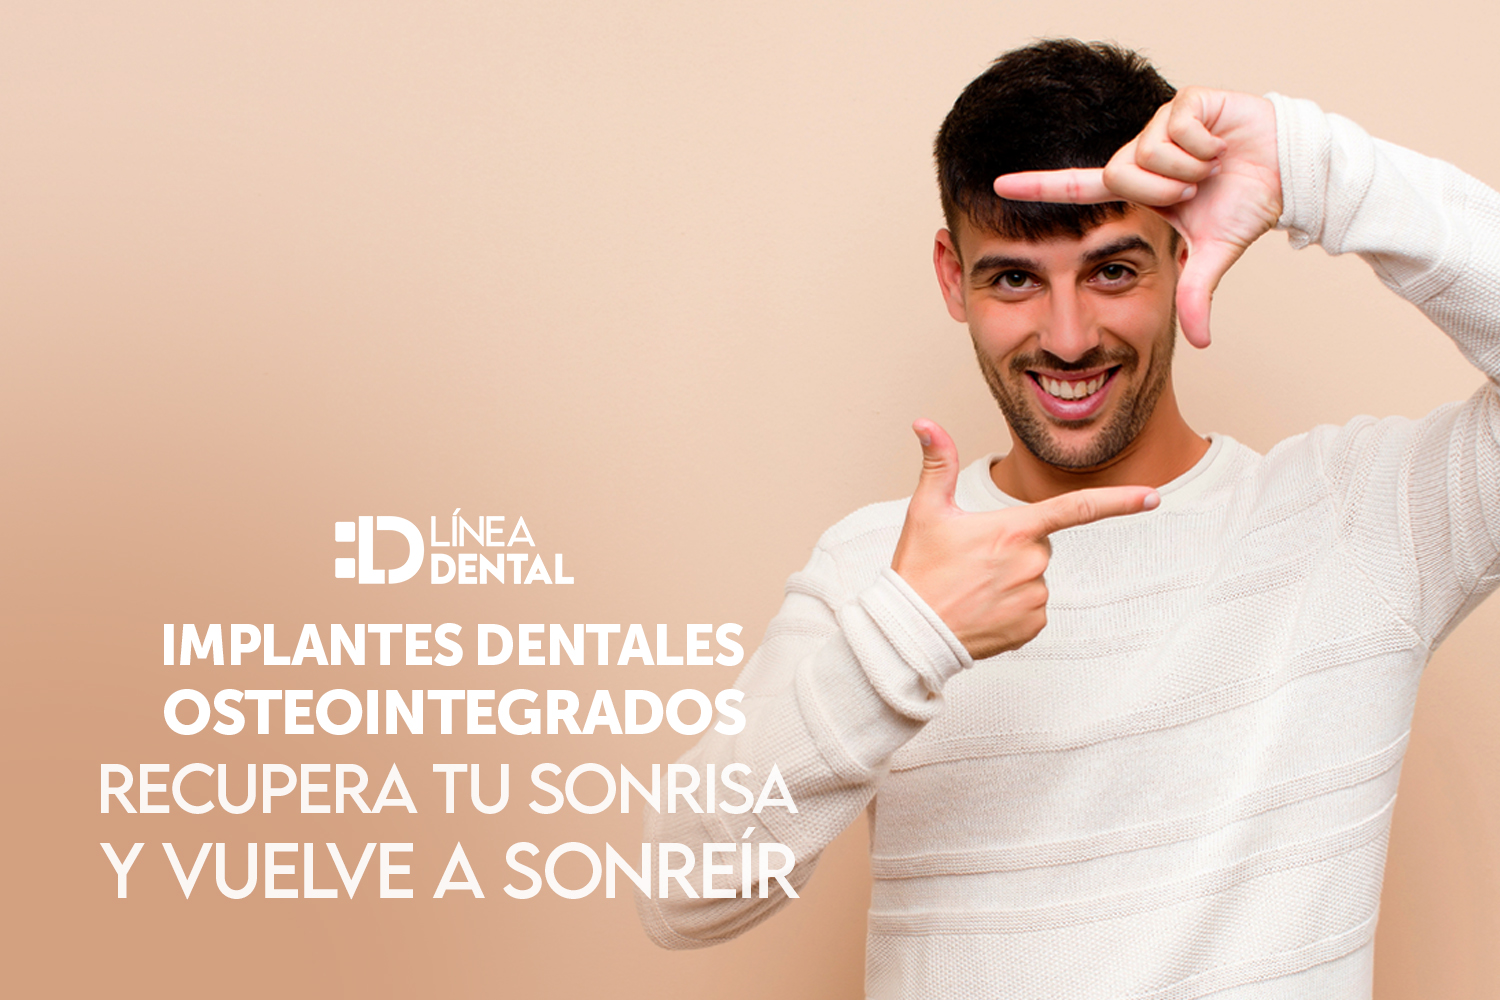 implante-dental-osteointegrados-recupera-tu-sonrisa-vuelva-sonreir-linea-dental-ciudad-real-miguelturra